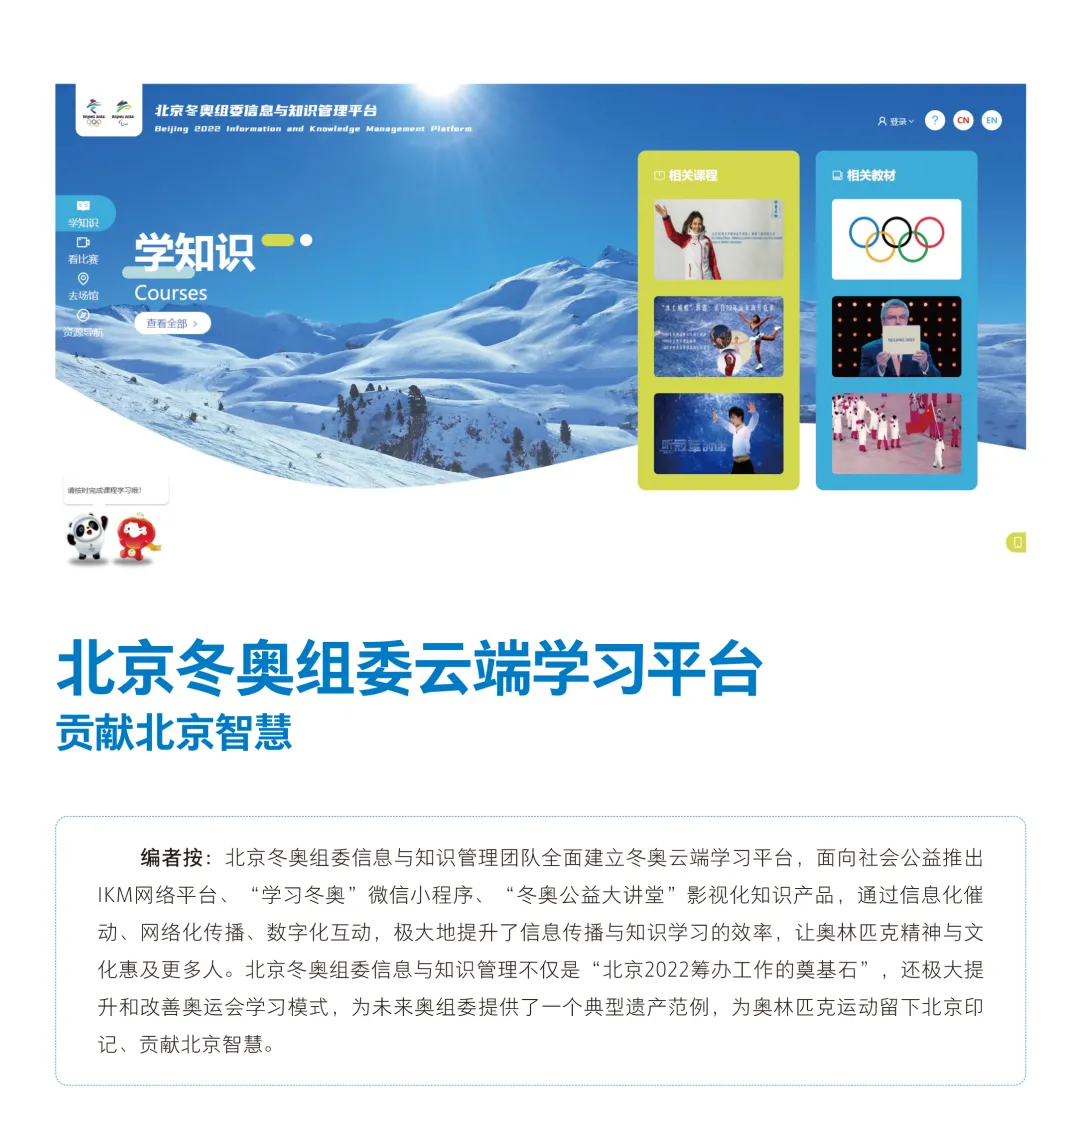 百丽官方网站入口:
北京2022年冬奥会和冬残奥会遗产案例报告集（2022）